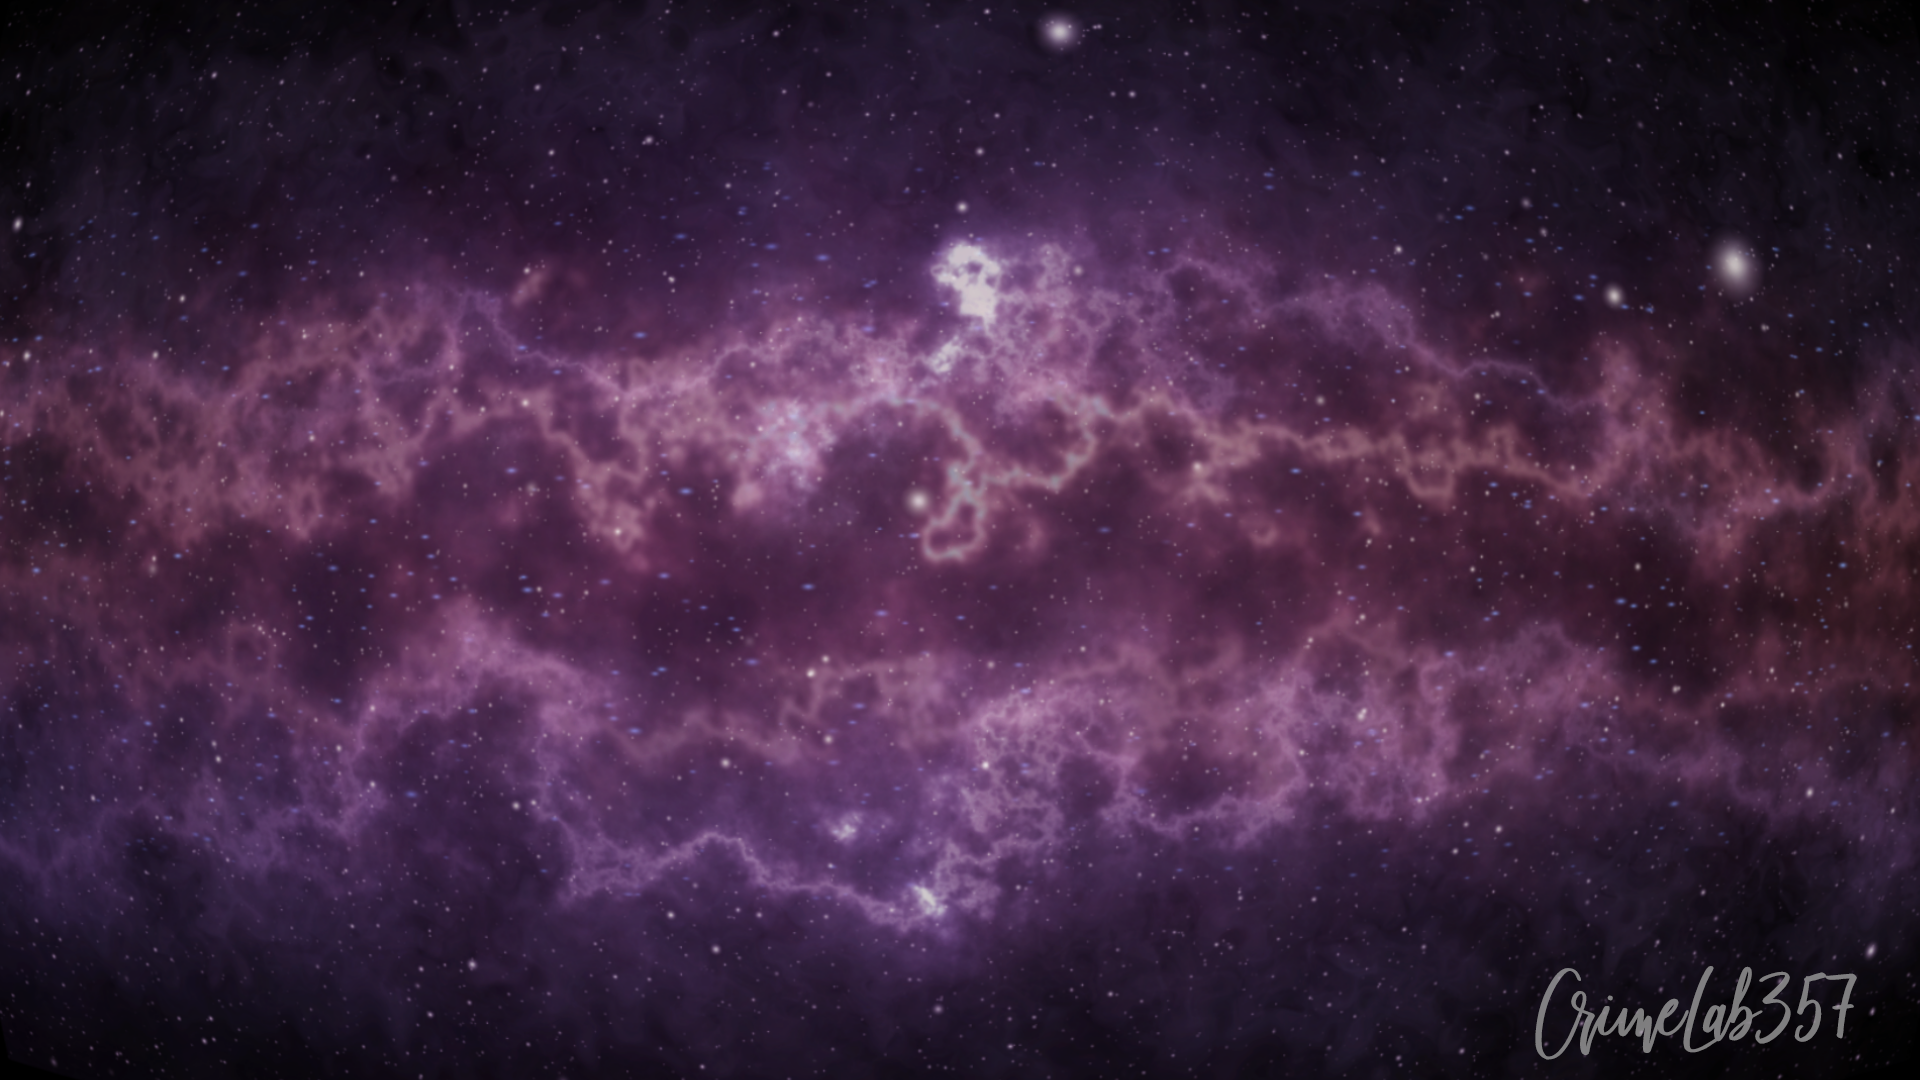 Deep Space Milky Way Nebula Digital Art Crimelab357 Liam Ragnathsingh 1920x1080